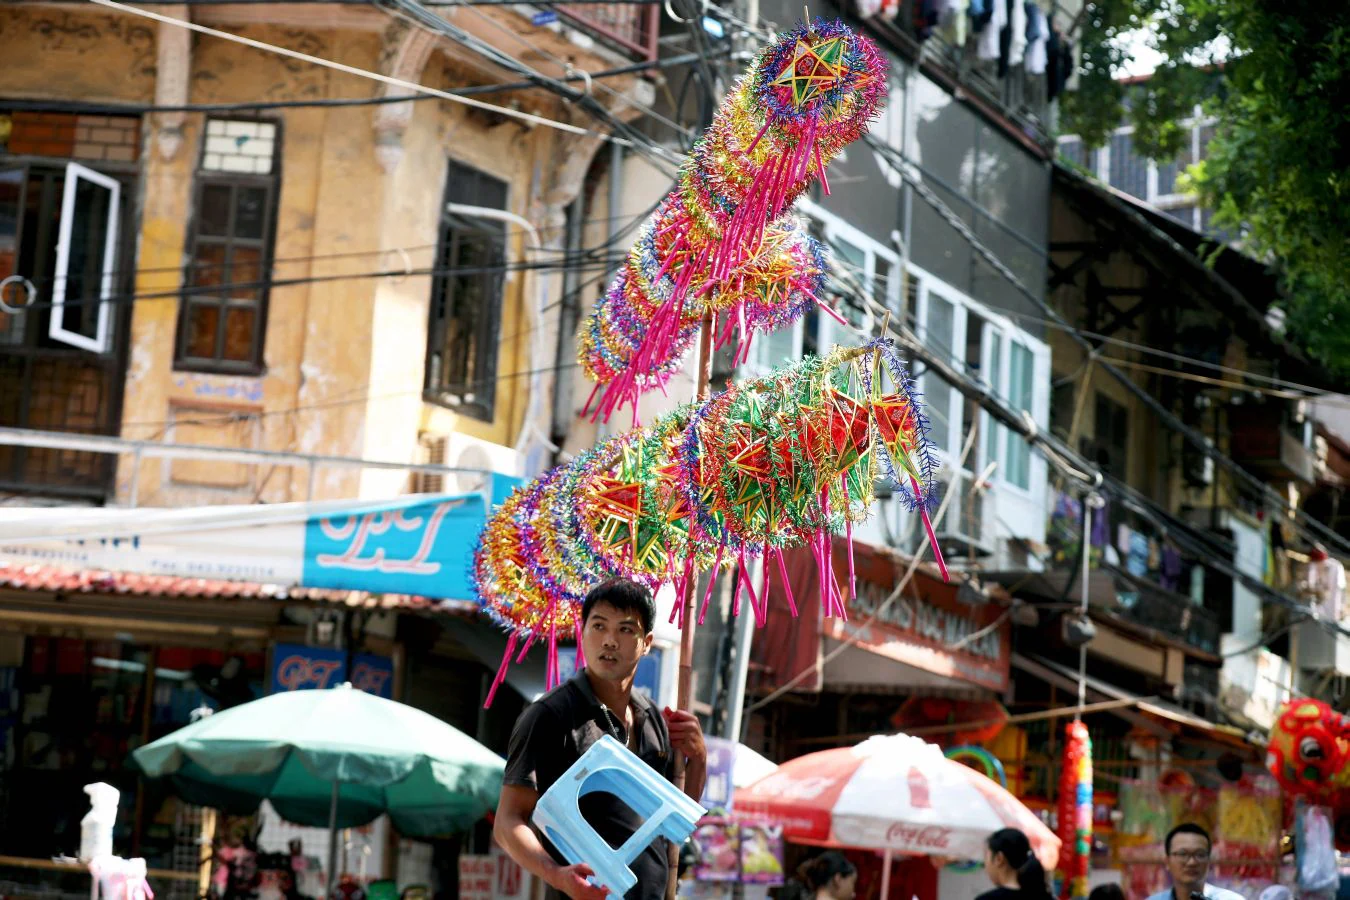 Las calles de Hanoi ya están decoradas para la celebración del Mid Autunm Festival, uno de los más importantes del país